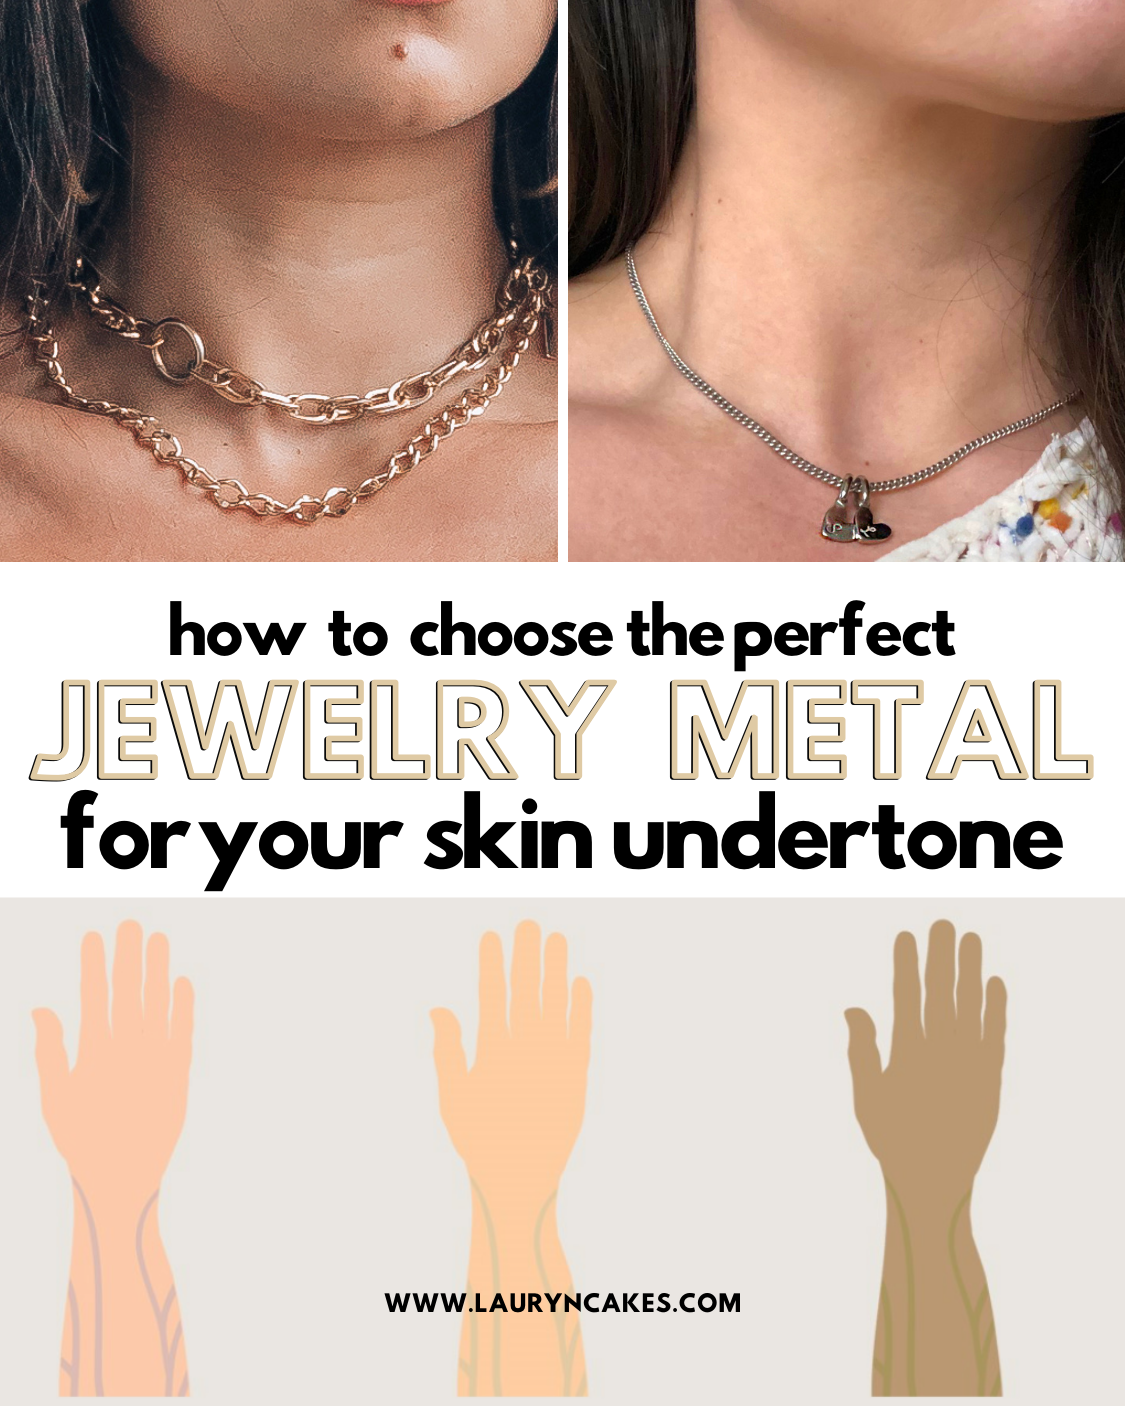 how to choose jewelry metals for skin undertones